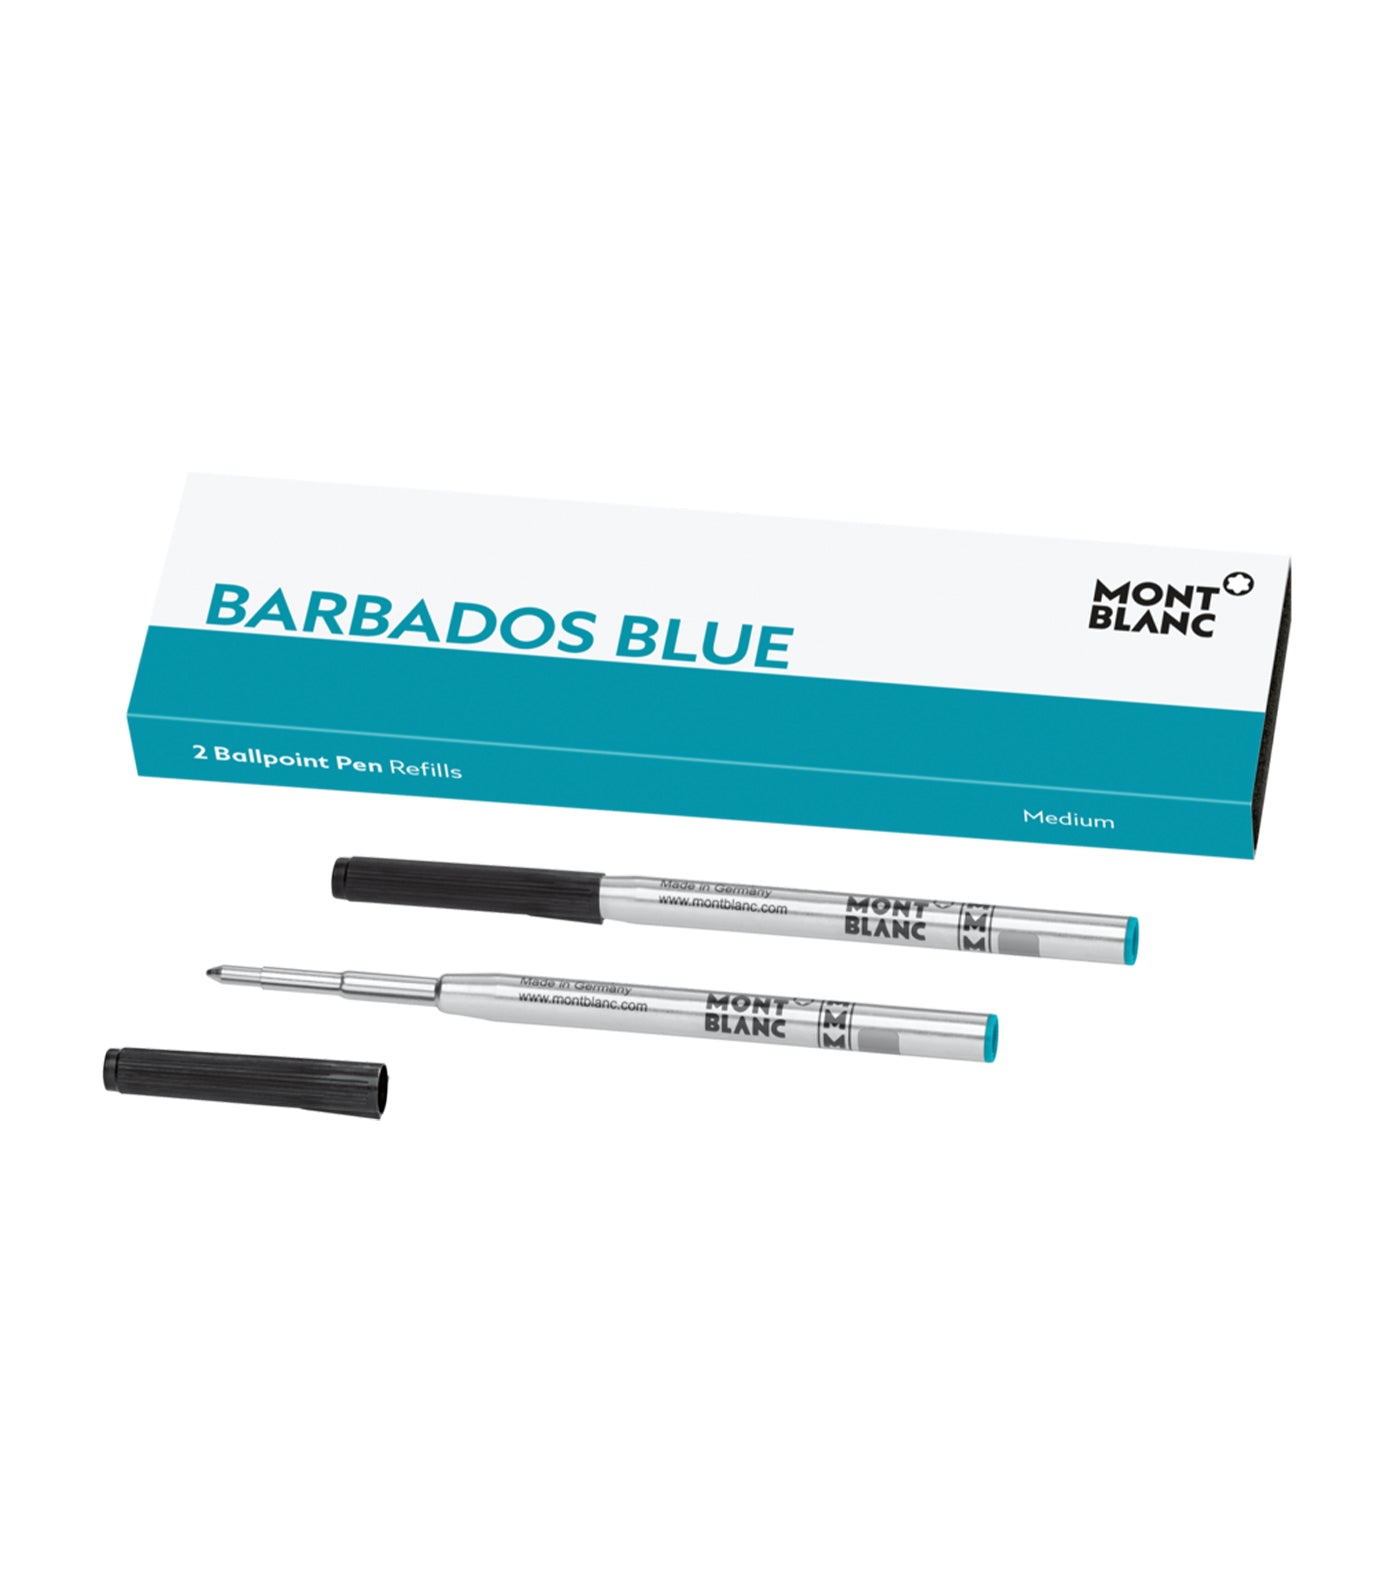 2 Ballpoint Pen Refill Medium, Barbados Blue